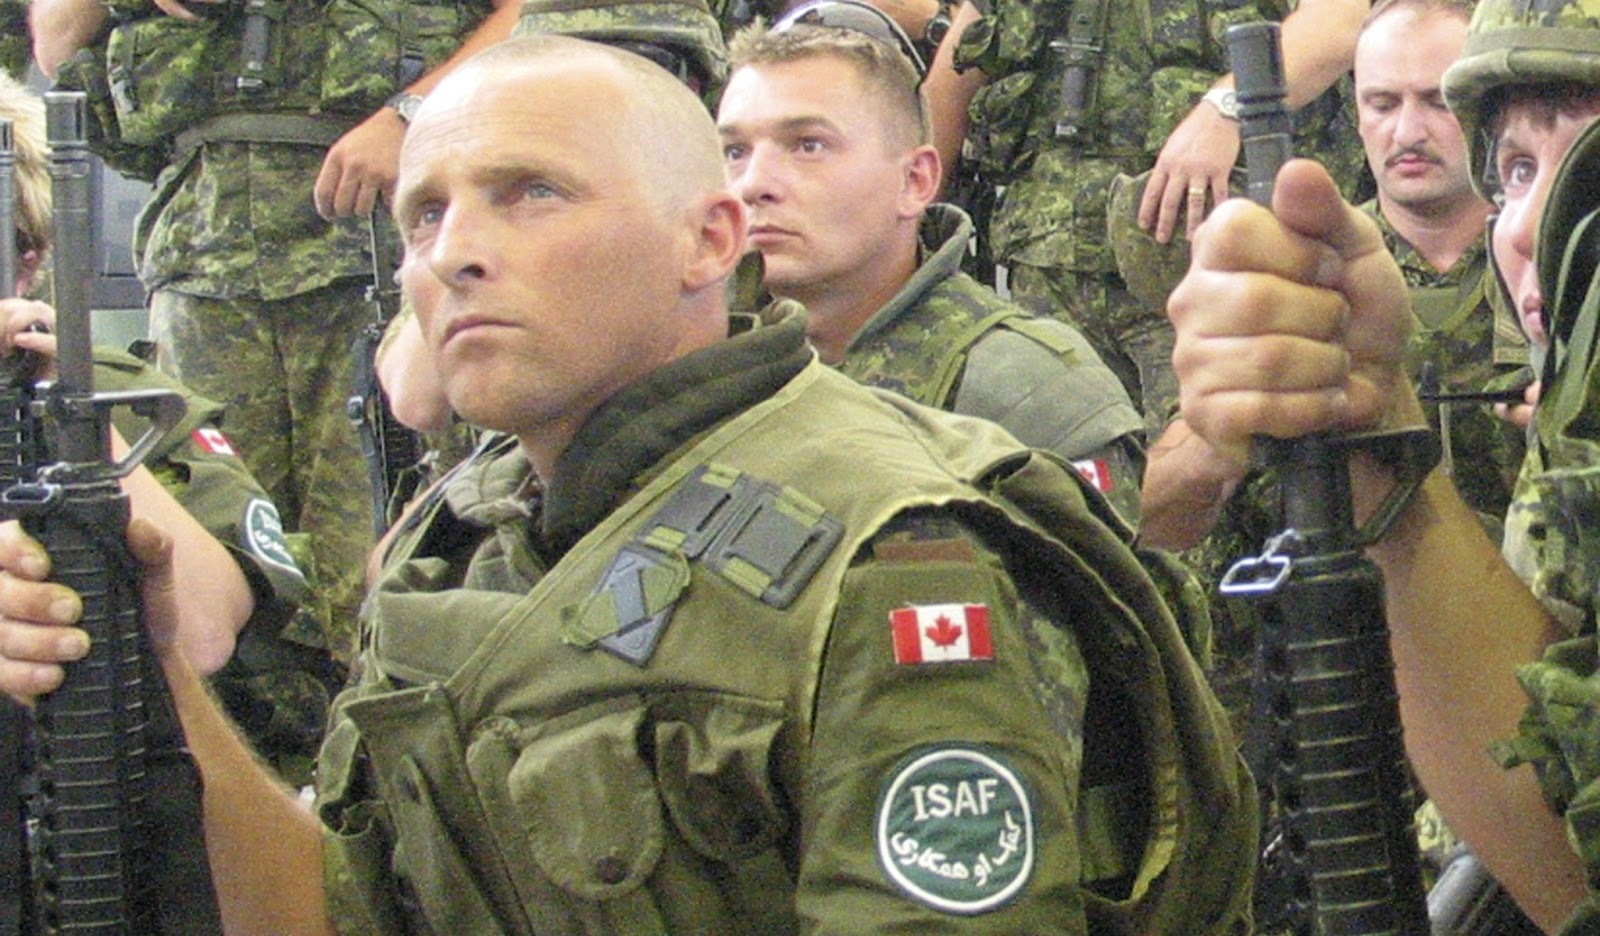 加拿大士兵在阿富汗图片